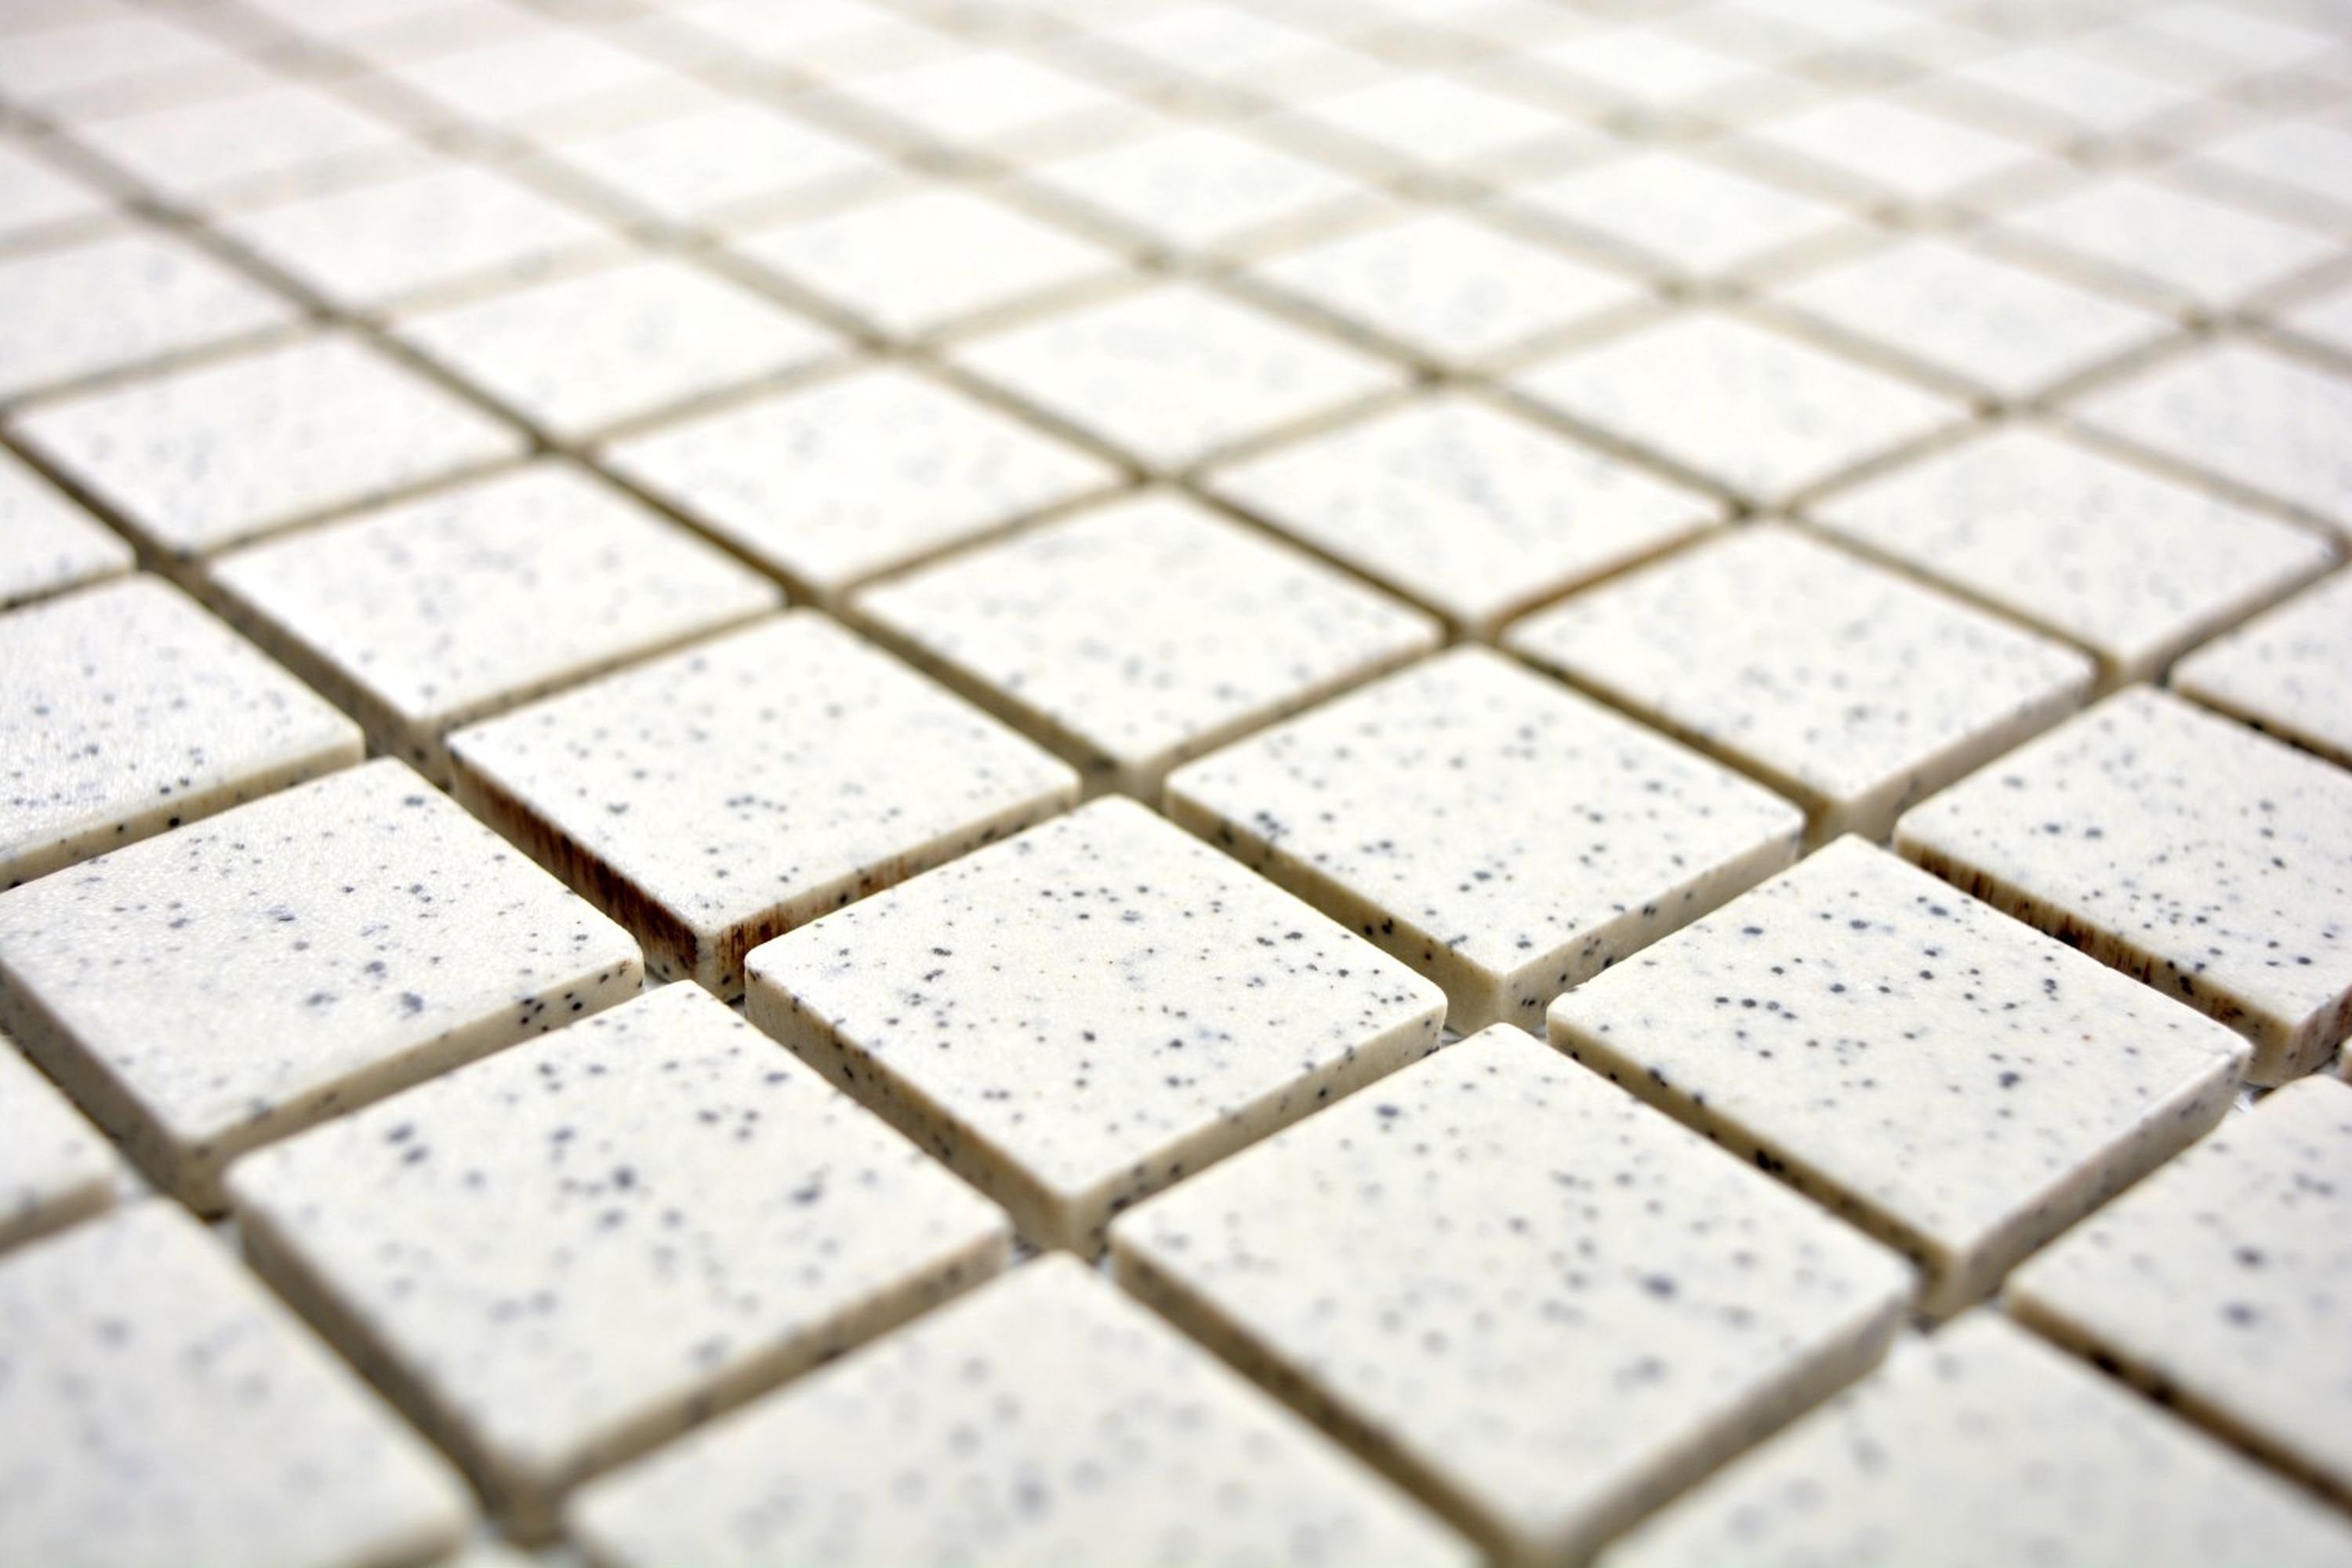 Fliese unglasiert Keramik Mosani Boden Bad cremeweiß Mosaikfliesen Mosaik gesprenkelt